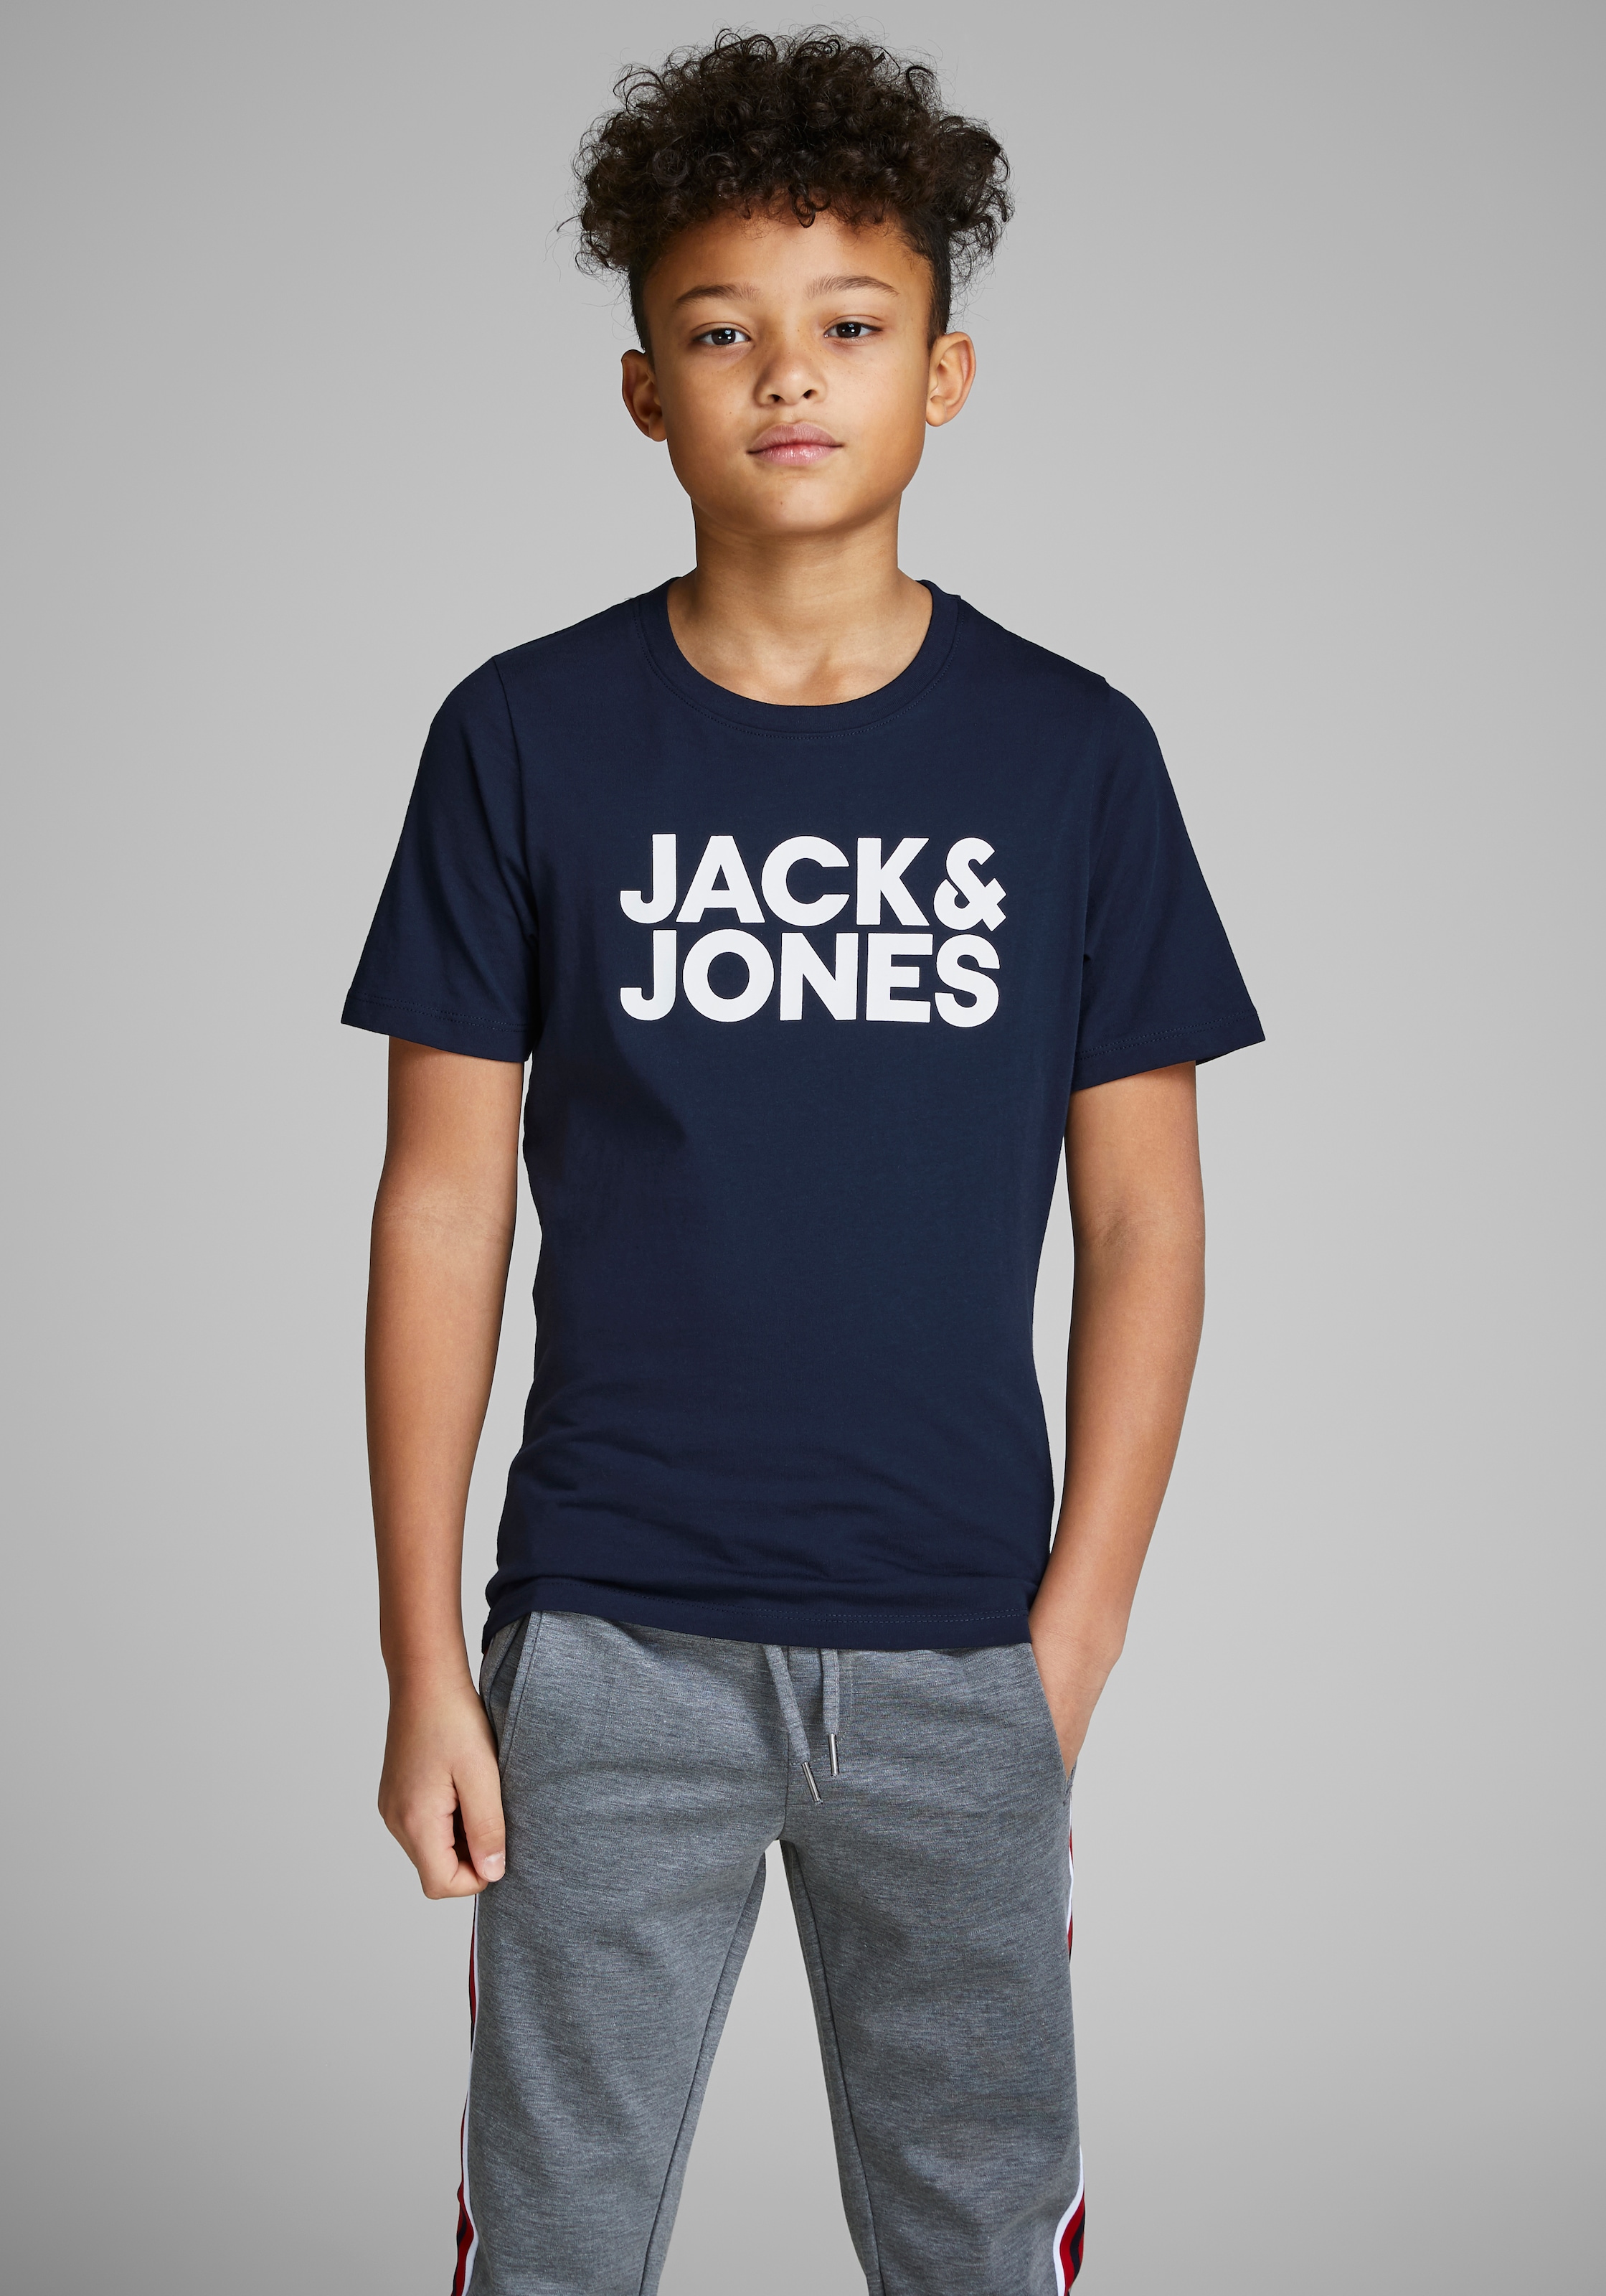 & bei Junior Jones T-Shirt OTTO kaufen Jack